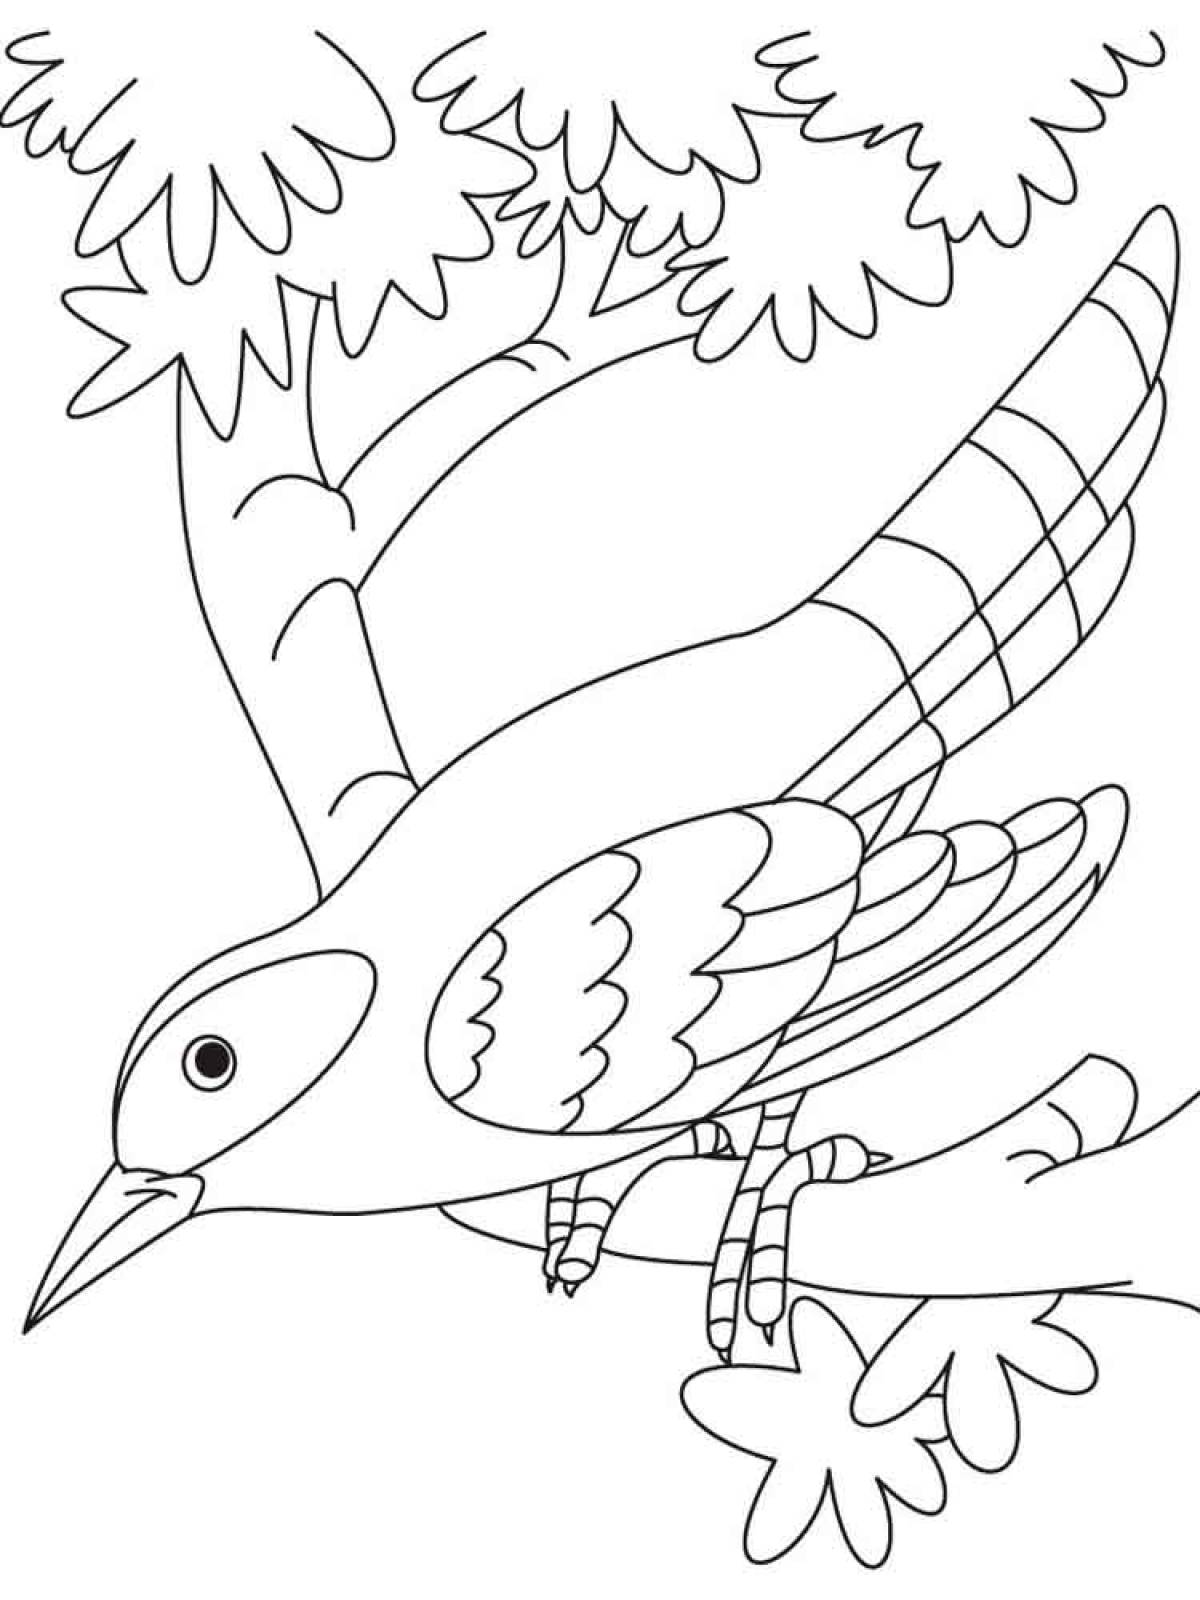 День птиц раскраски для детей. Птицы. Раскраска. Кукушка раскраска для детей. Птицы раскраска для детей. Птичка раскраска для детей.